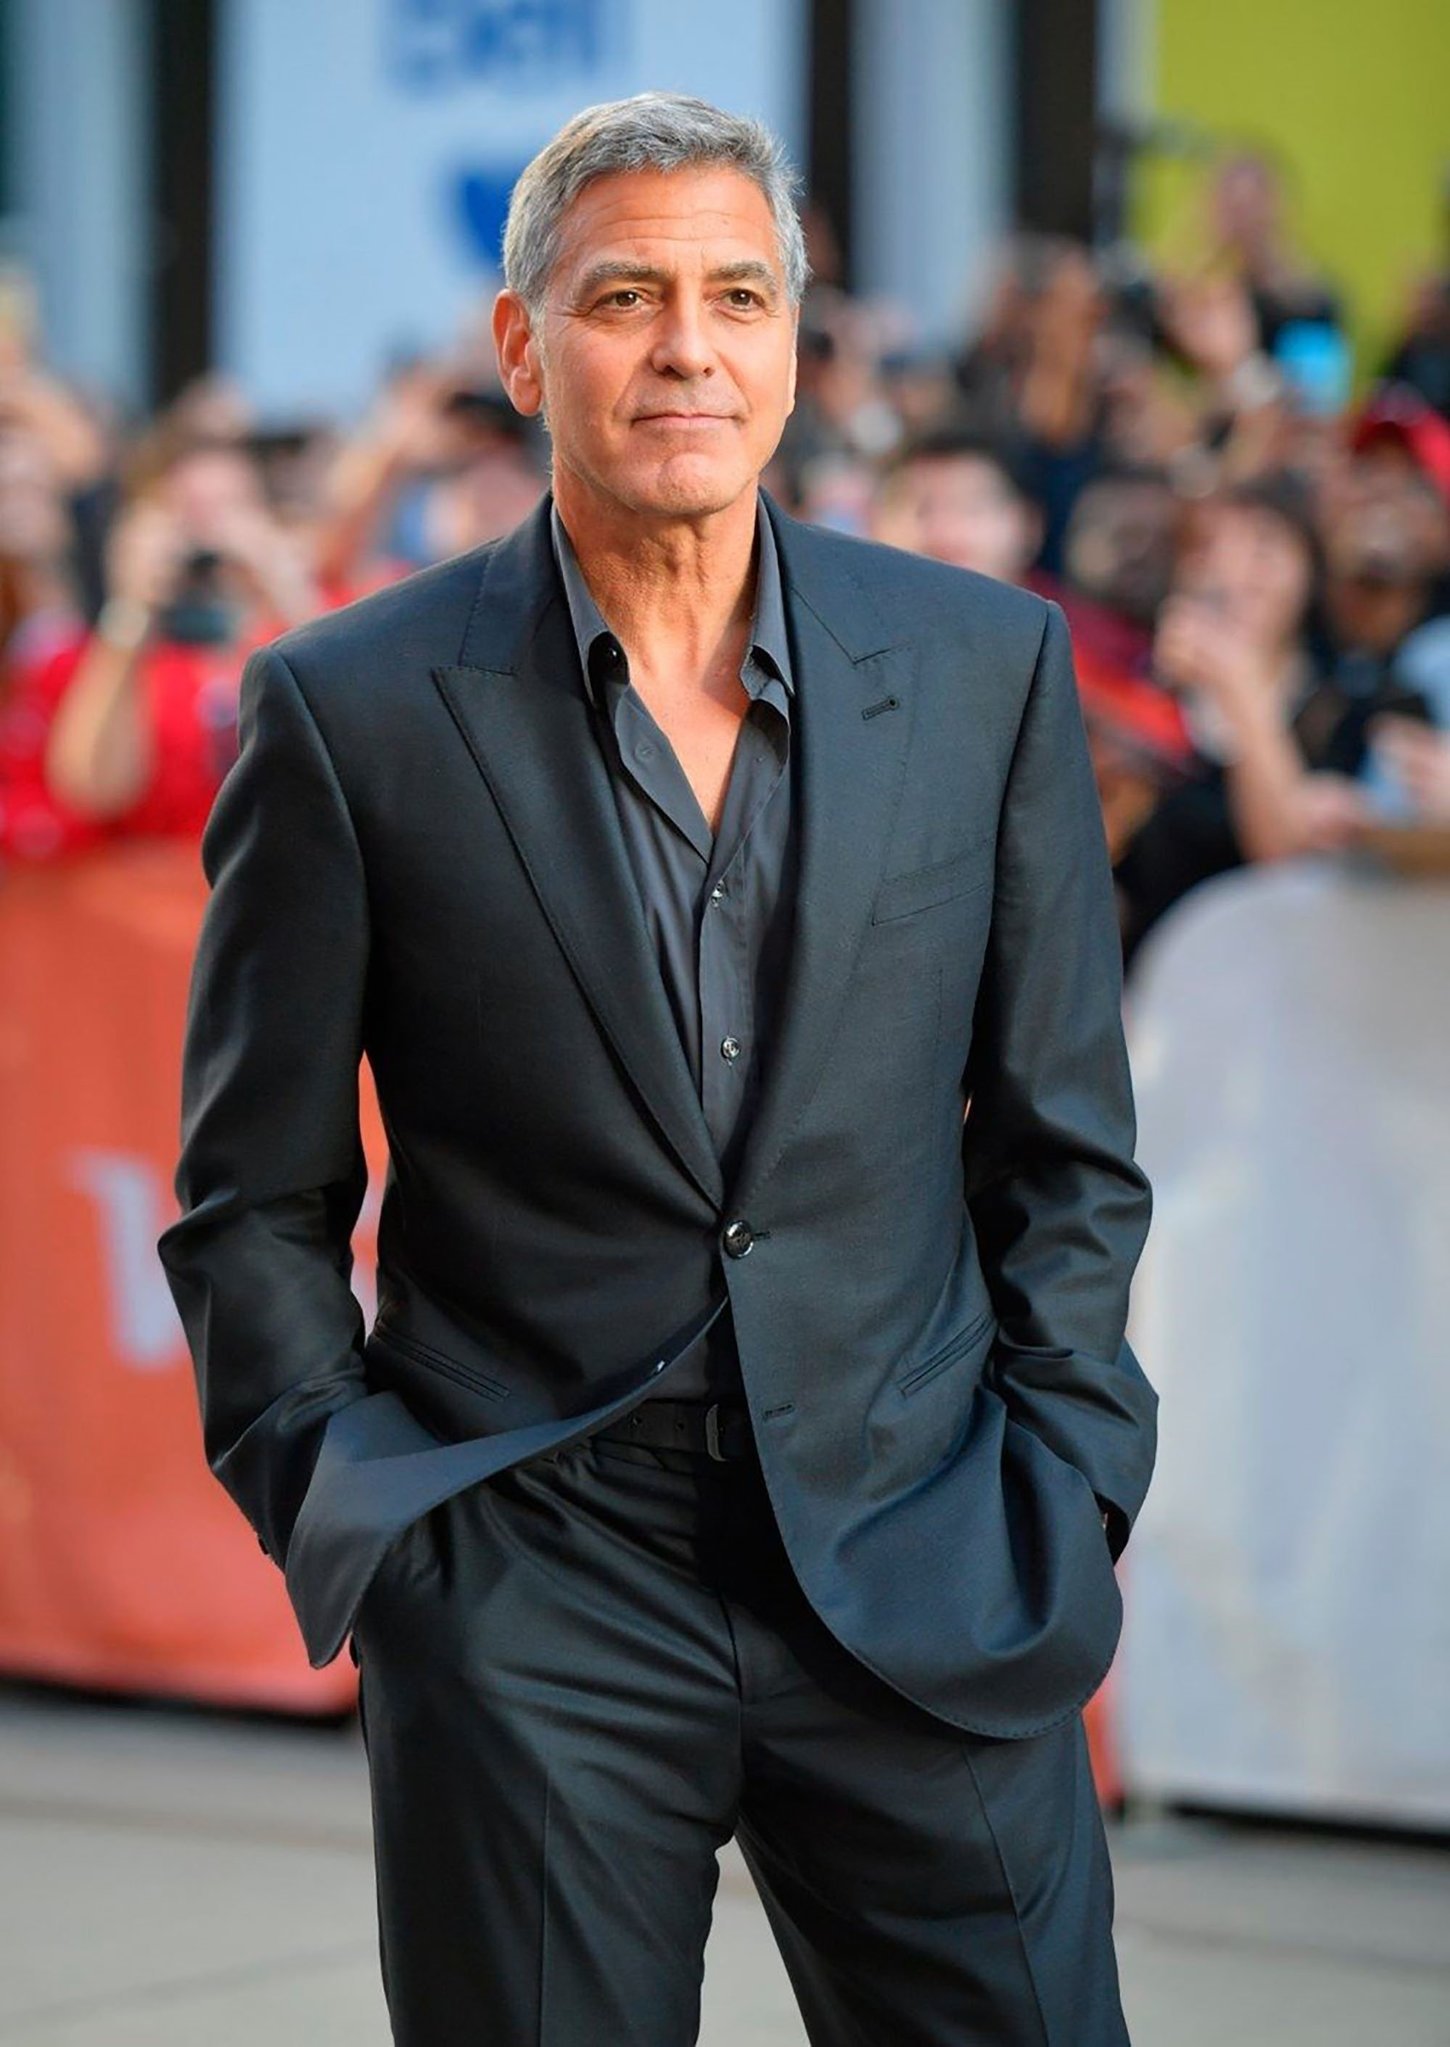 George Clooney, 14 yakın arkadaşına 1'er milyon dolar nakit para verdi